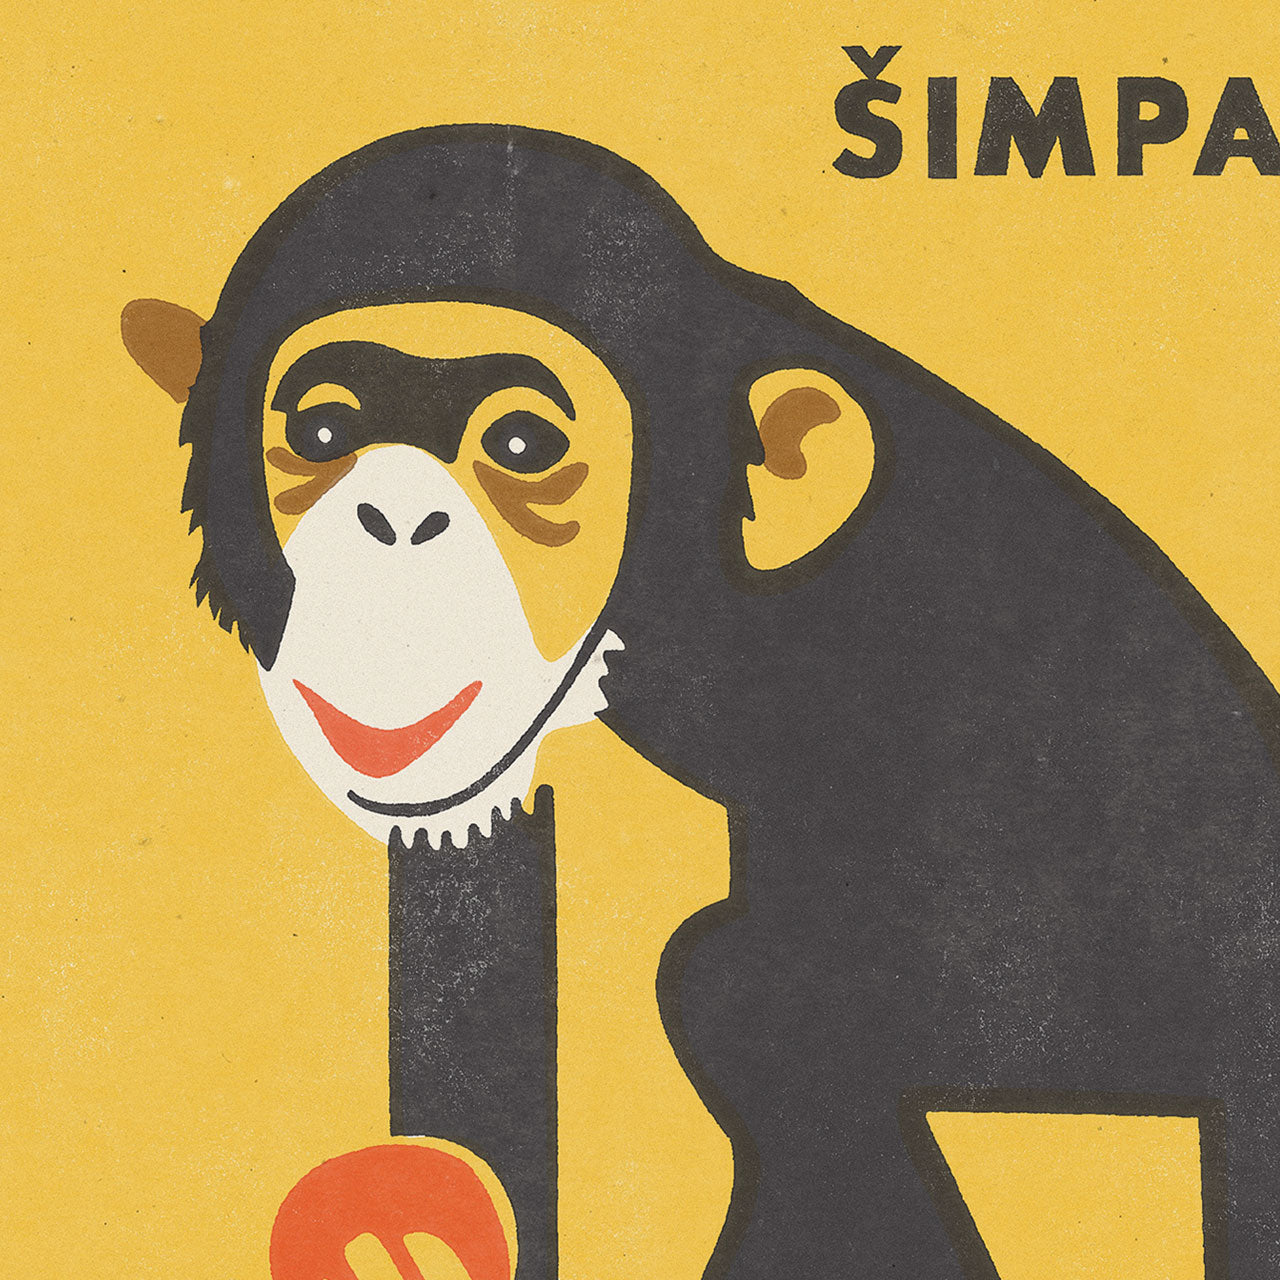 Prager Zoo - Schimpanse - Poster 30x40 cm 